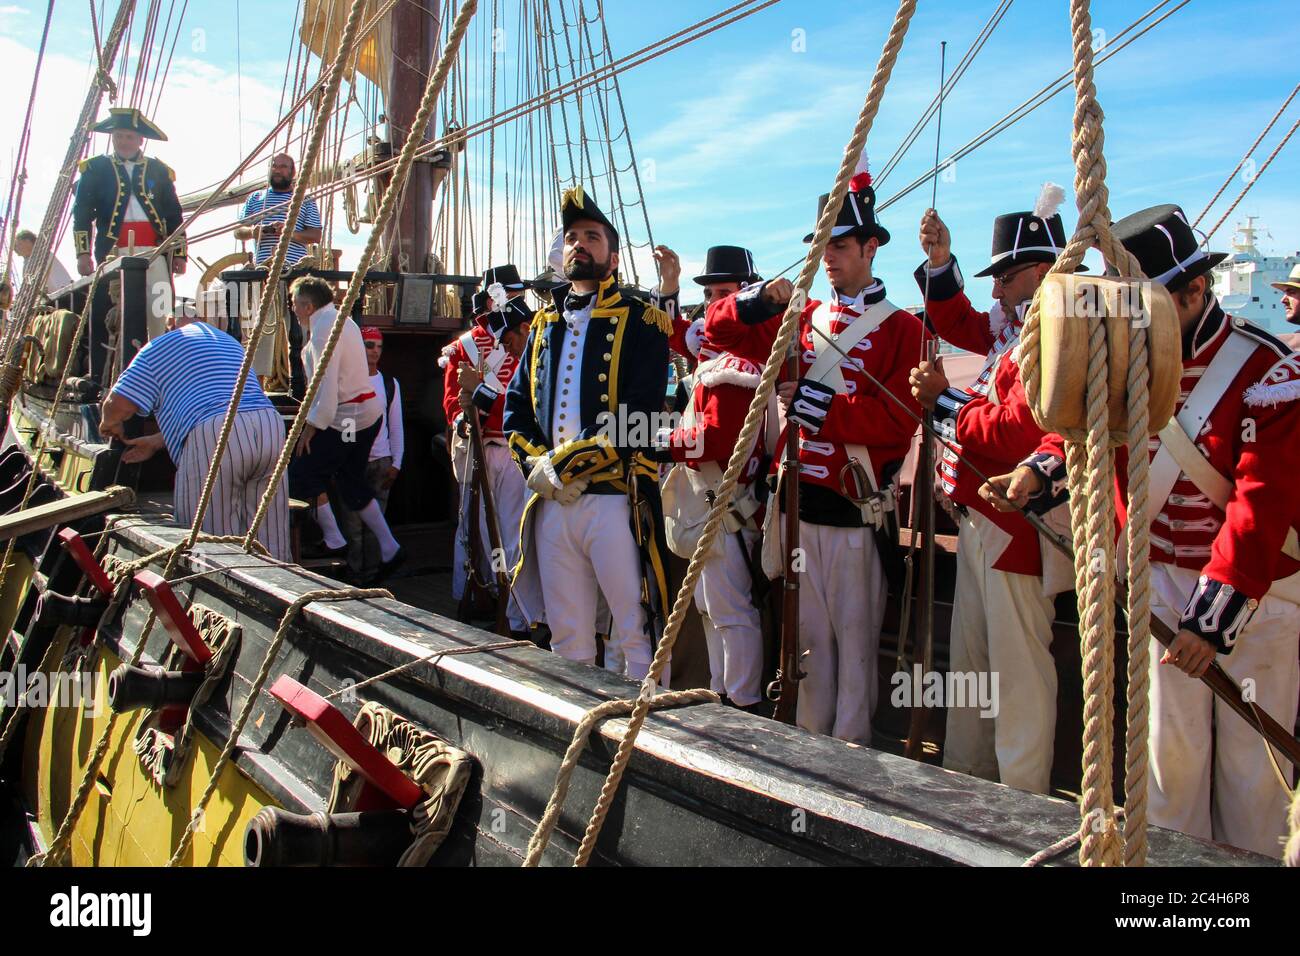 Malaga, Espagne - 26 octobre 2014 : capitaine de la Marine royale au XVIIIe siècle sur un navire avec son équipage de marins et de marins. Reenactors sur une brig wi Banque D'Images